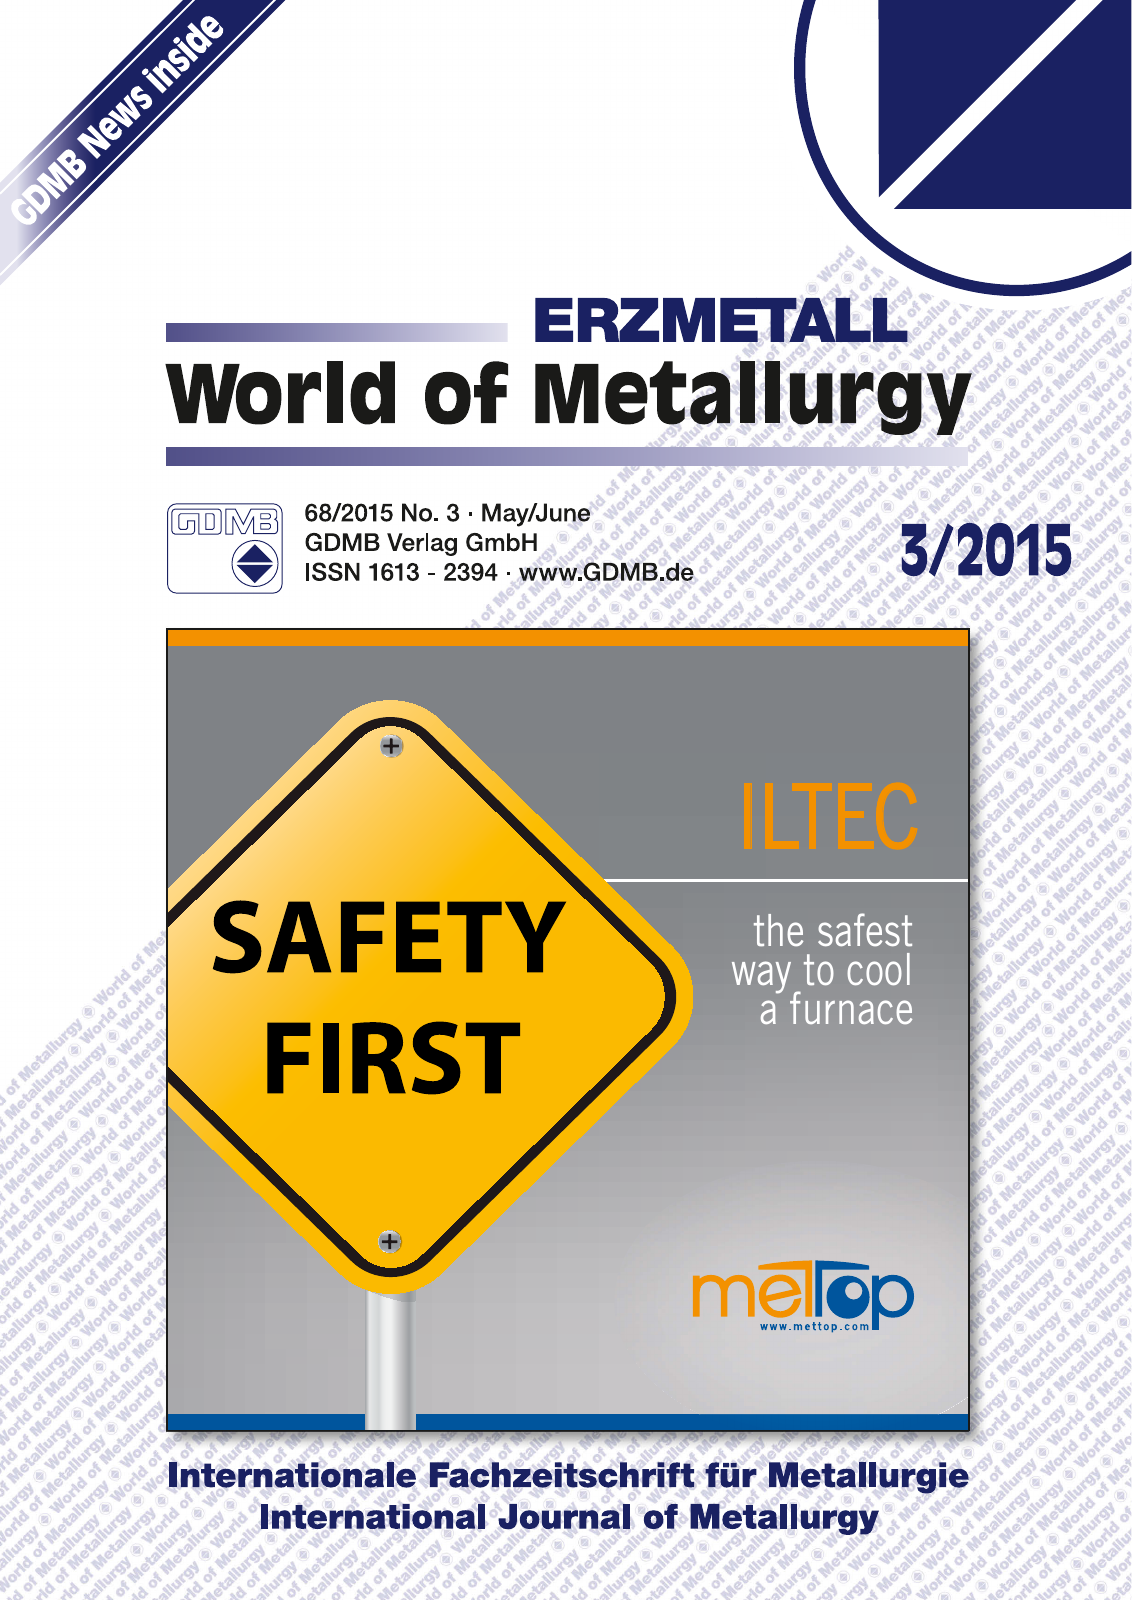 Vorschau World of Metallurgy 3/2015 Seite 1